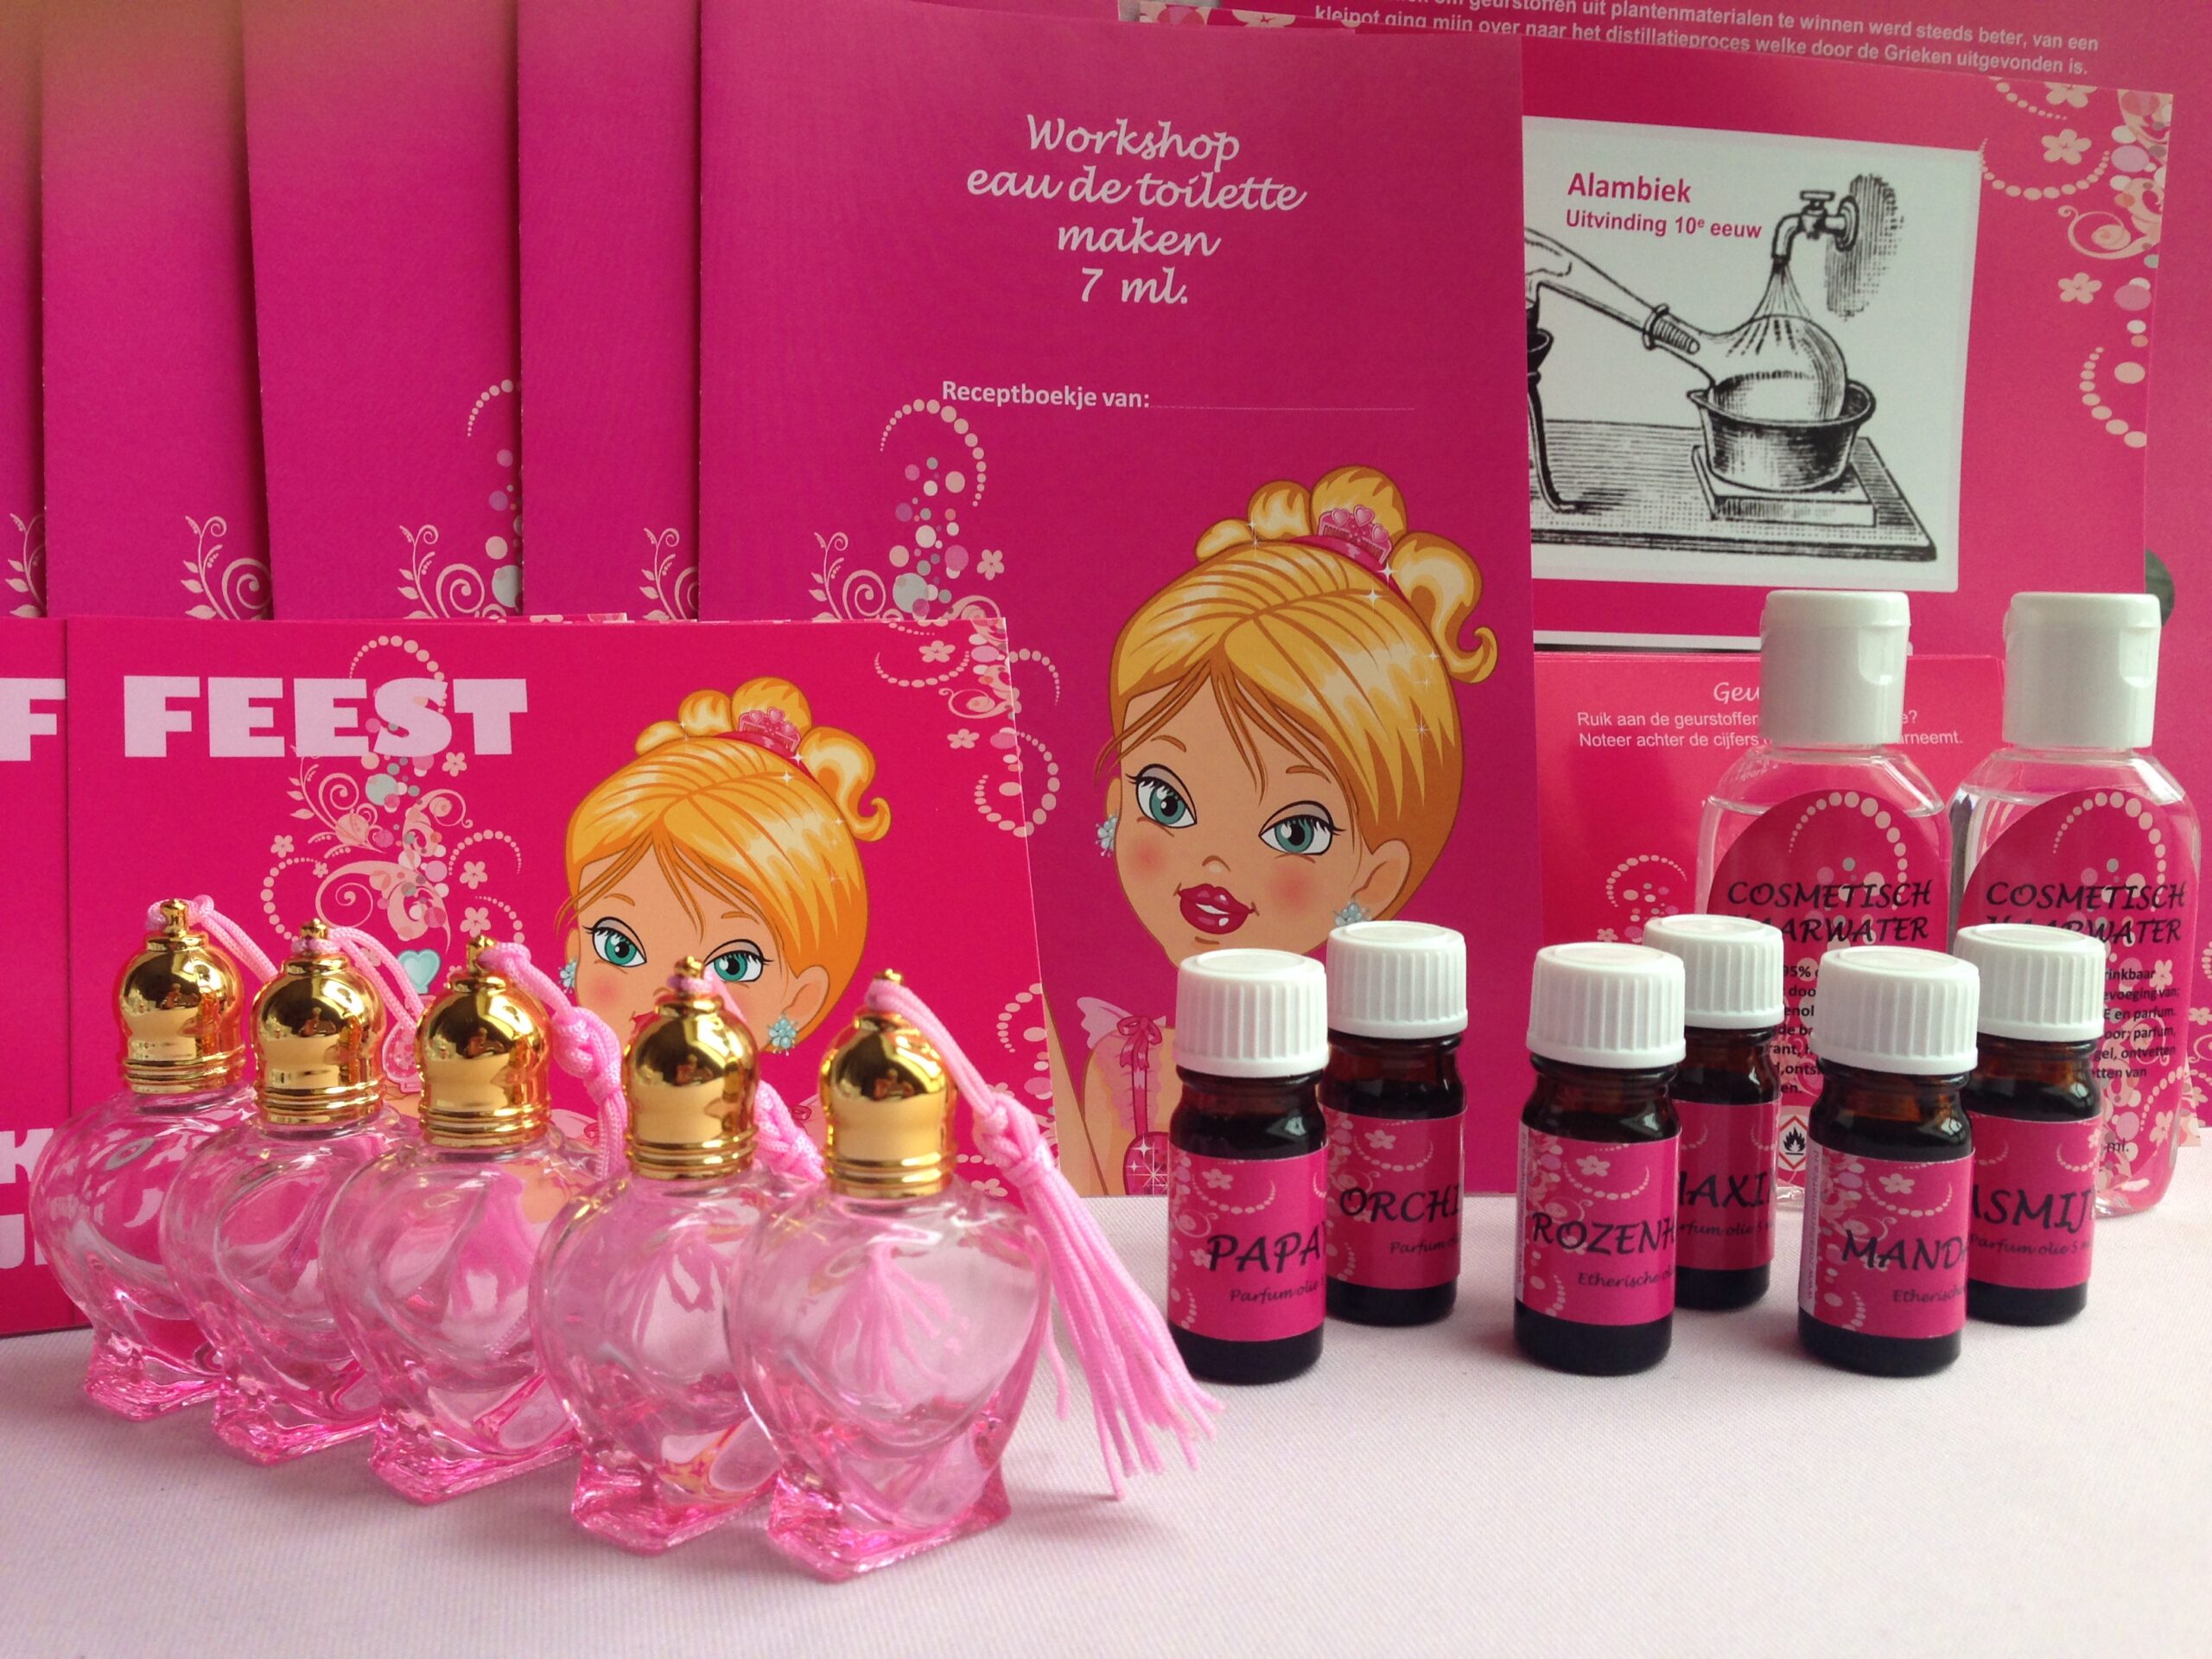 Fantastisch compleet thuis workshop pakket parfum maken voor 5 kinderen € 39,95